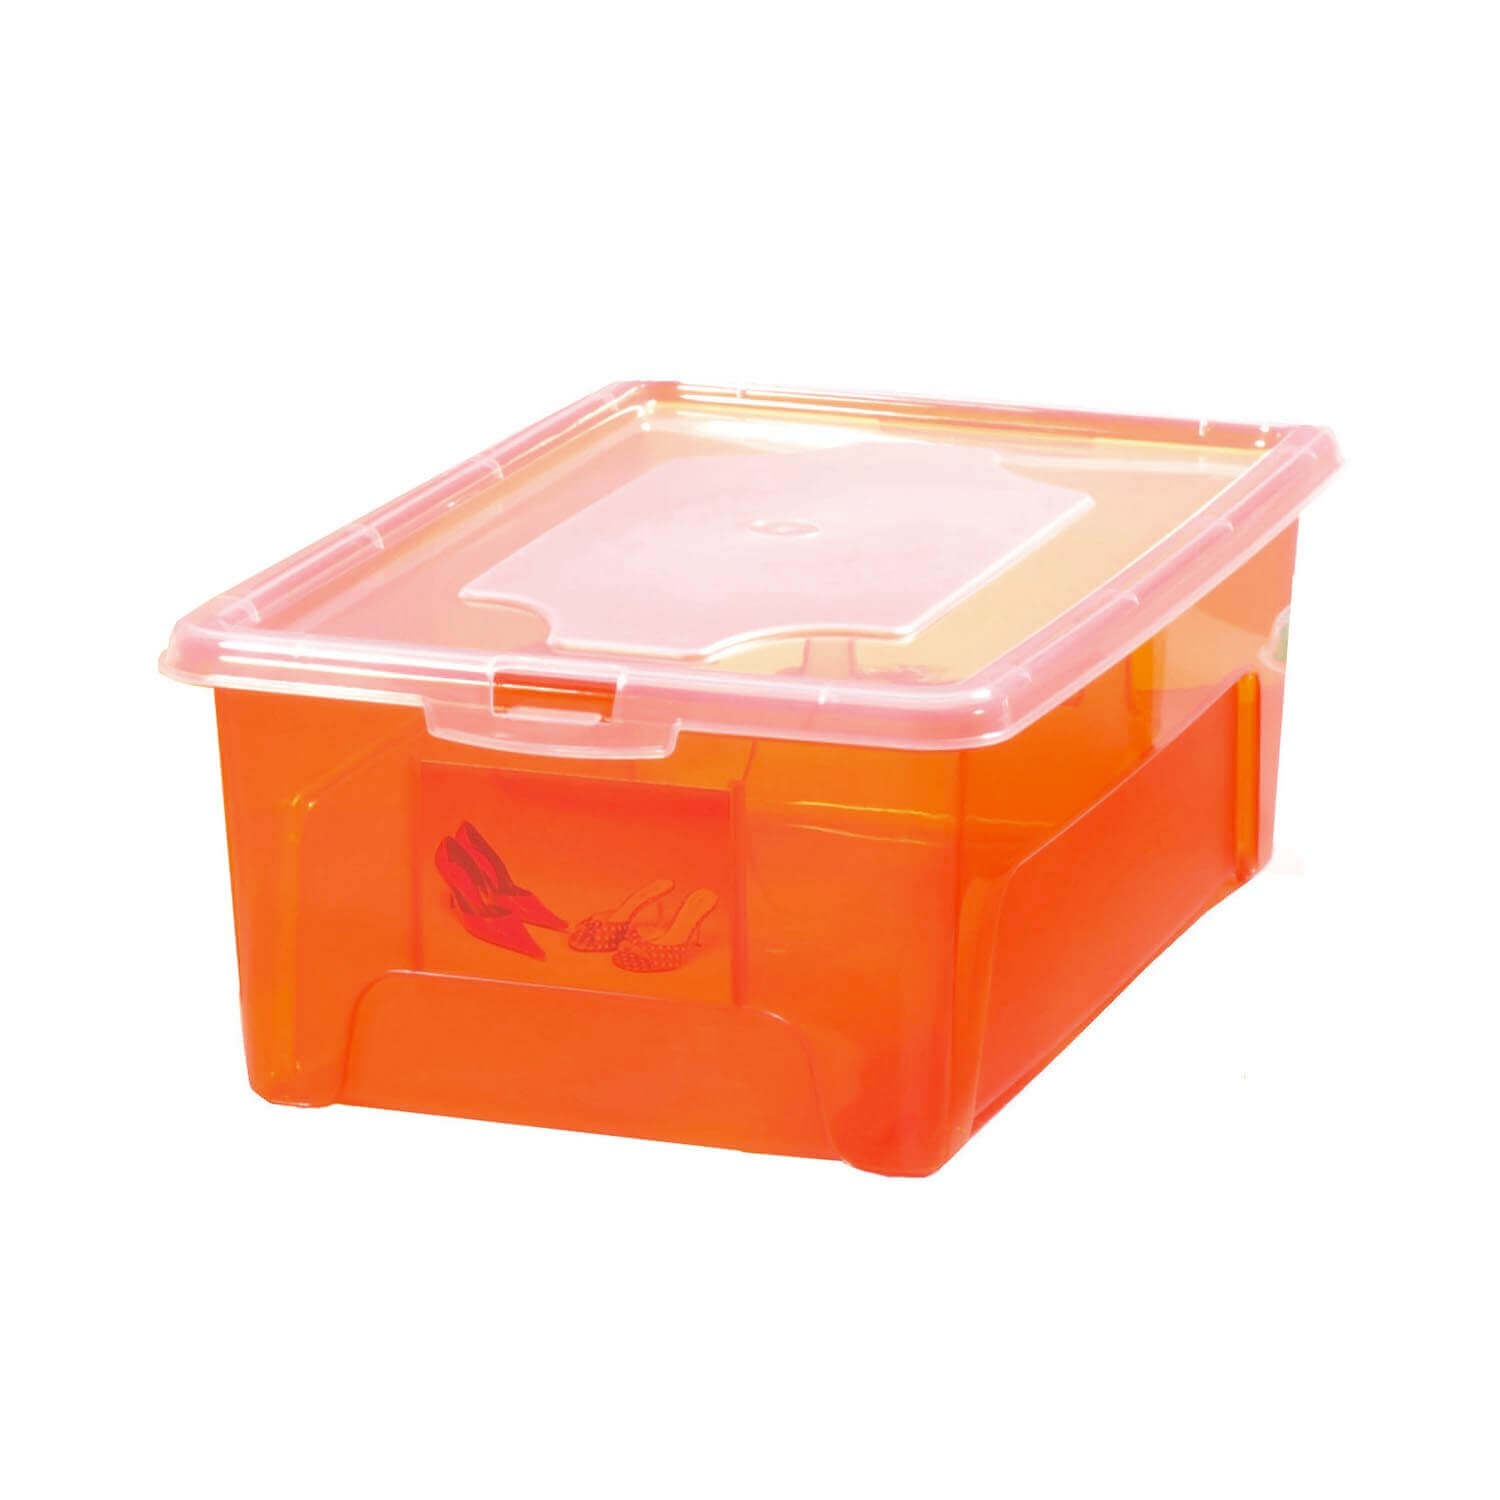 Aufbewahrungsbox "Easybox" 10 L, Kunststoffbox